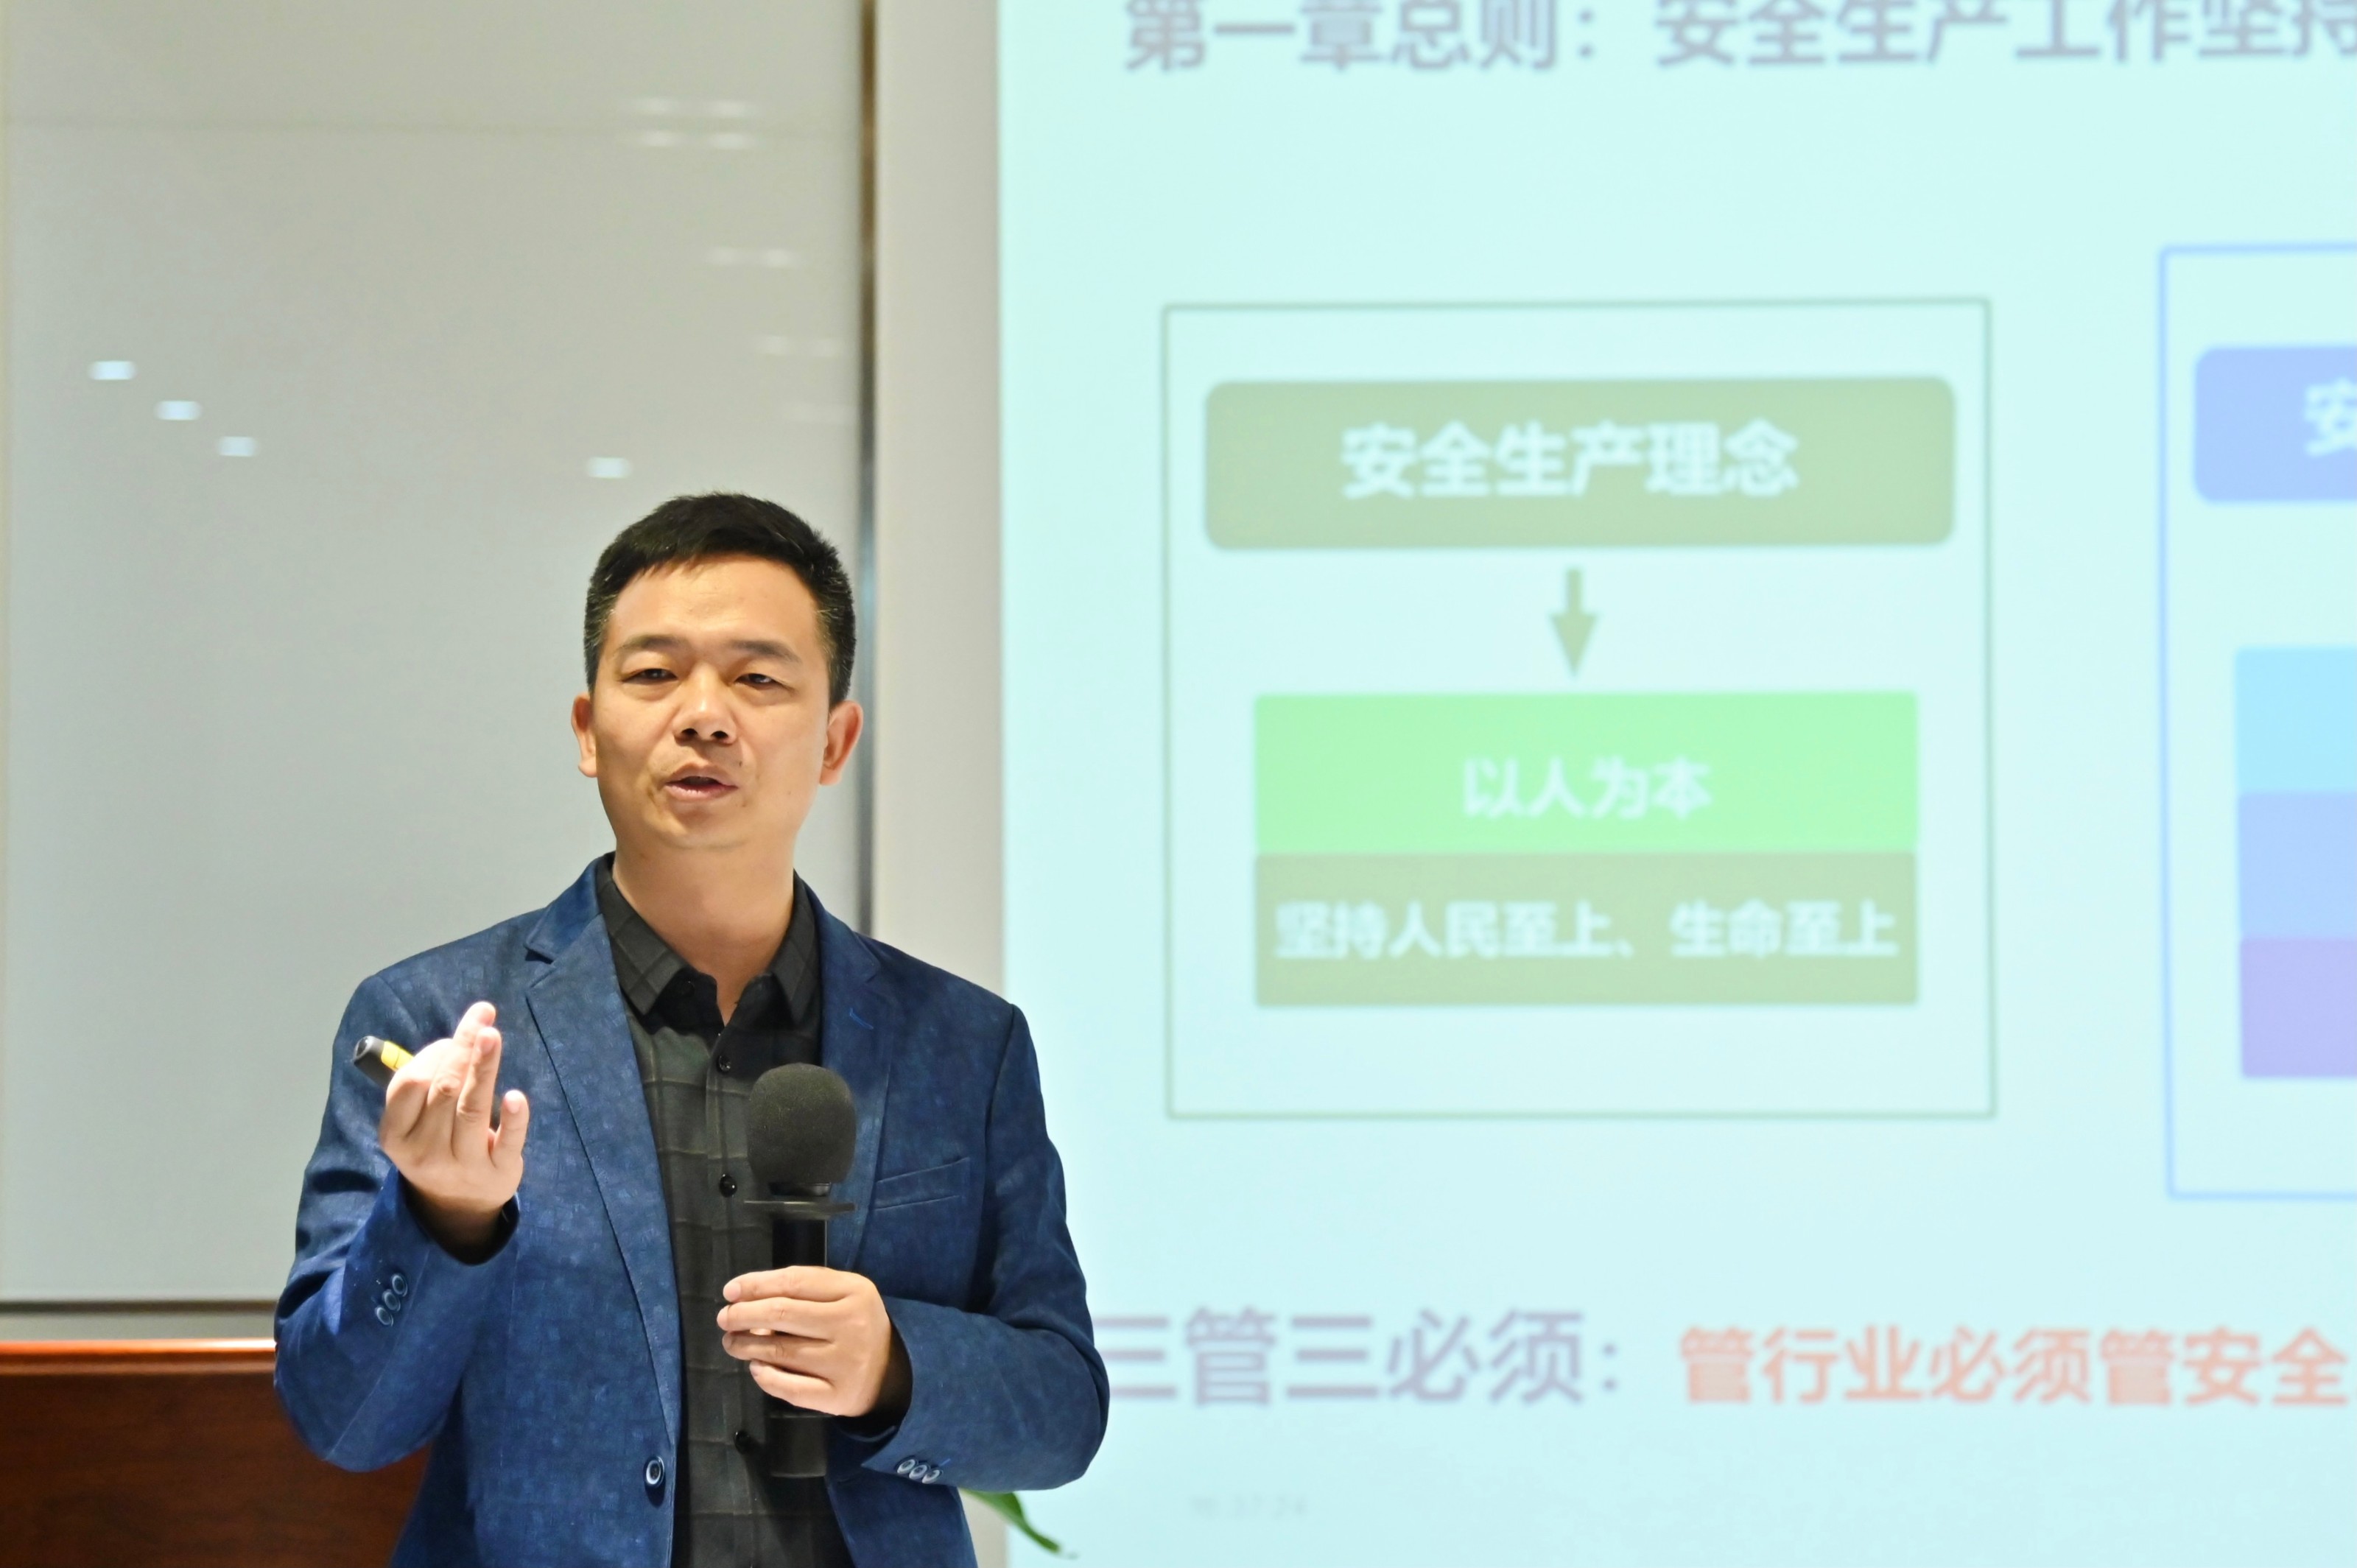 在培训过程中,刘老师对最新颁布的《安全生产法》相关修订条款,企业和